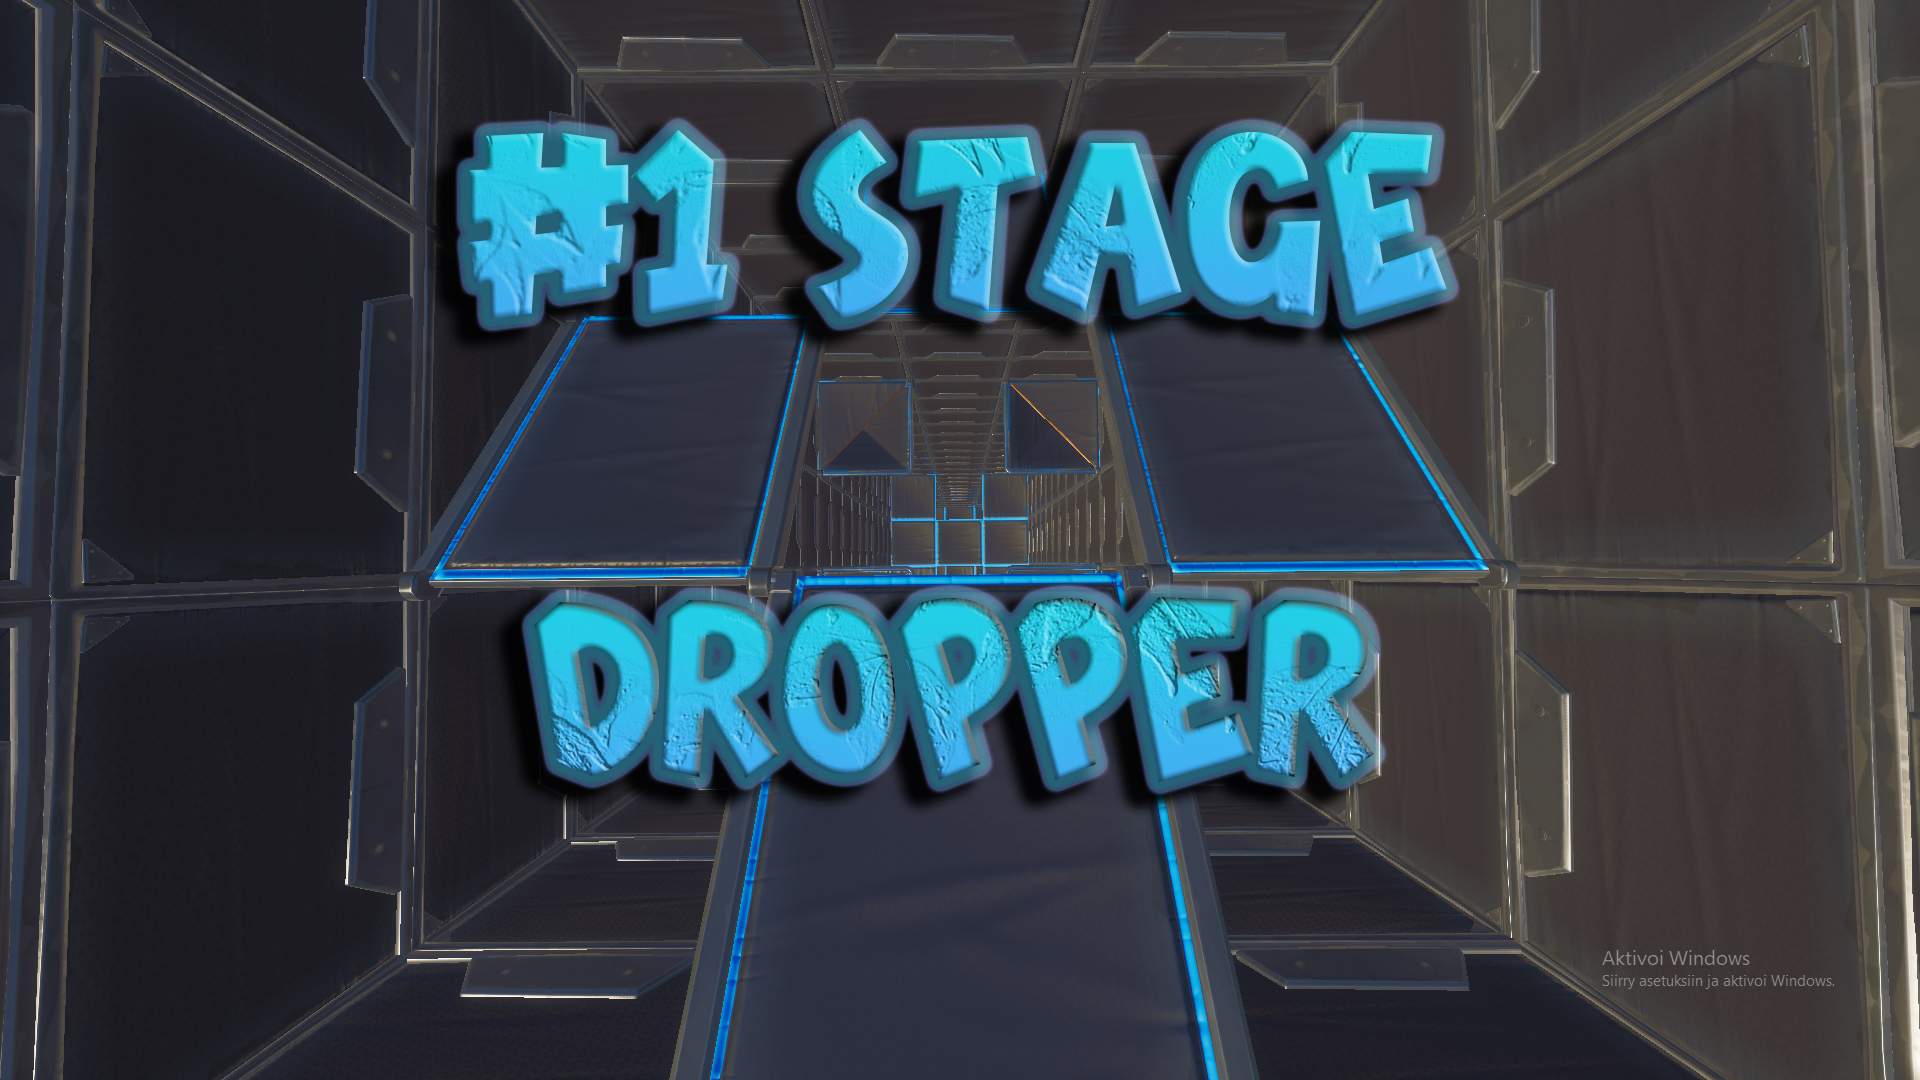 1 STAGE DROPPER - Fortnite Creative Map Codes - Dropnite.com.